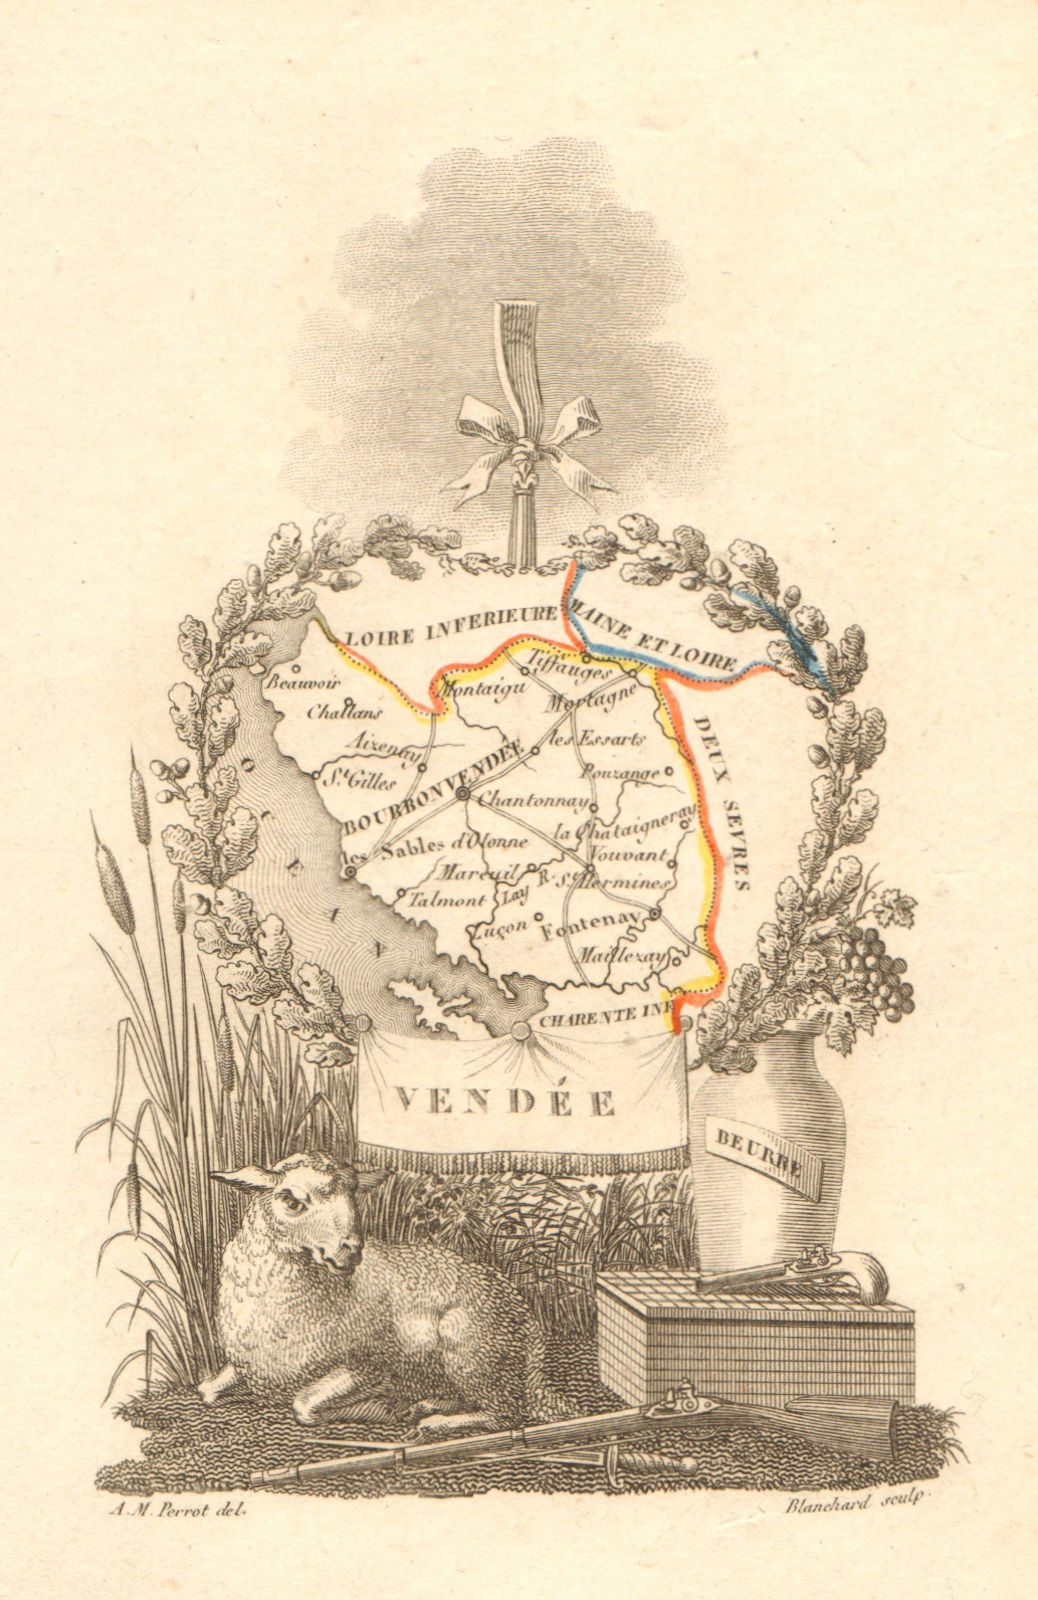 Associate Product VENDÉE département. Scarce antique map/carte by A.M. PERROT 1823 old